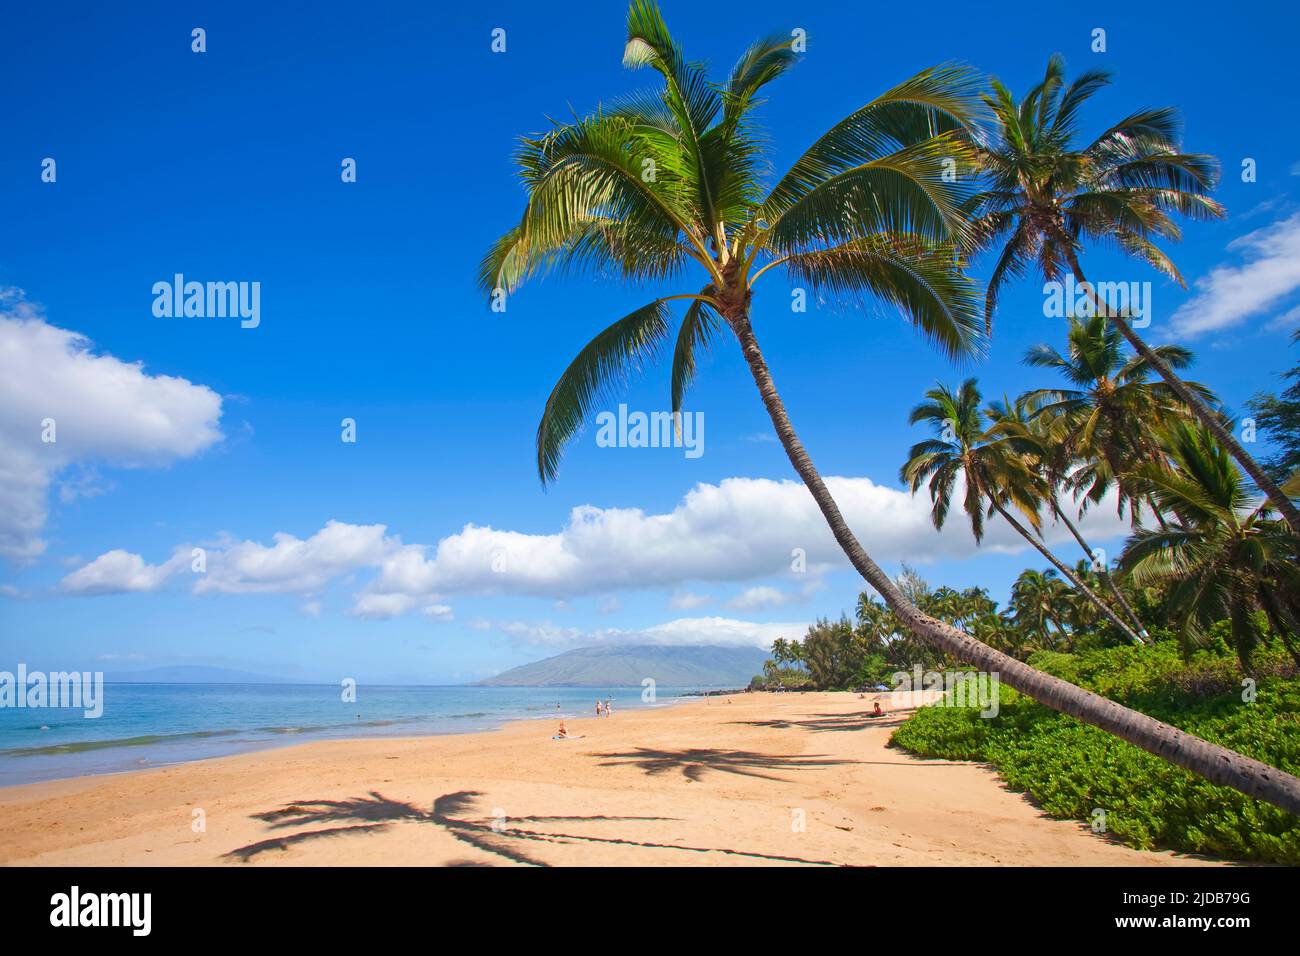 Coconut palm and palm silhouettes on sand. Kamaole Beach Park 1, West Maui Mountains in distance, Kihei, Maui, Hawaii Stock Photo